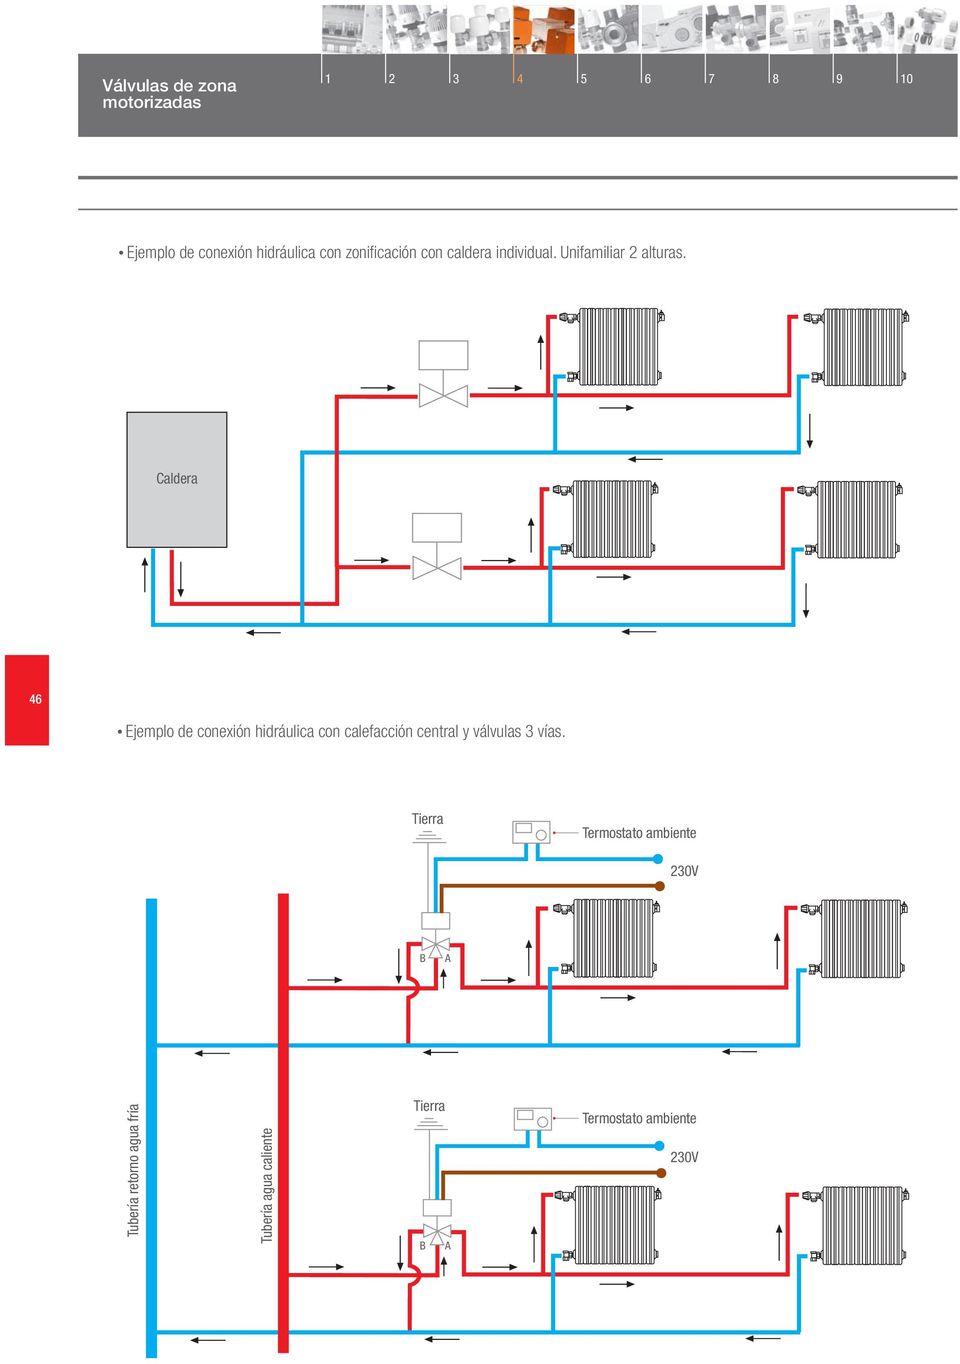 Caldera 46 Ejemplo de conexión hidráulica con calefacción central y válvulas 3 vías.